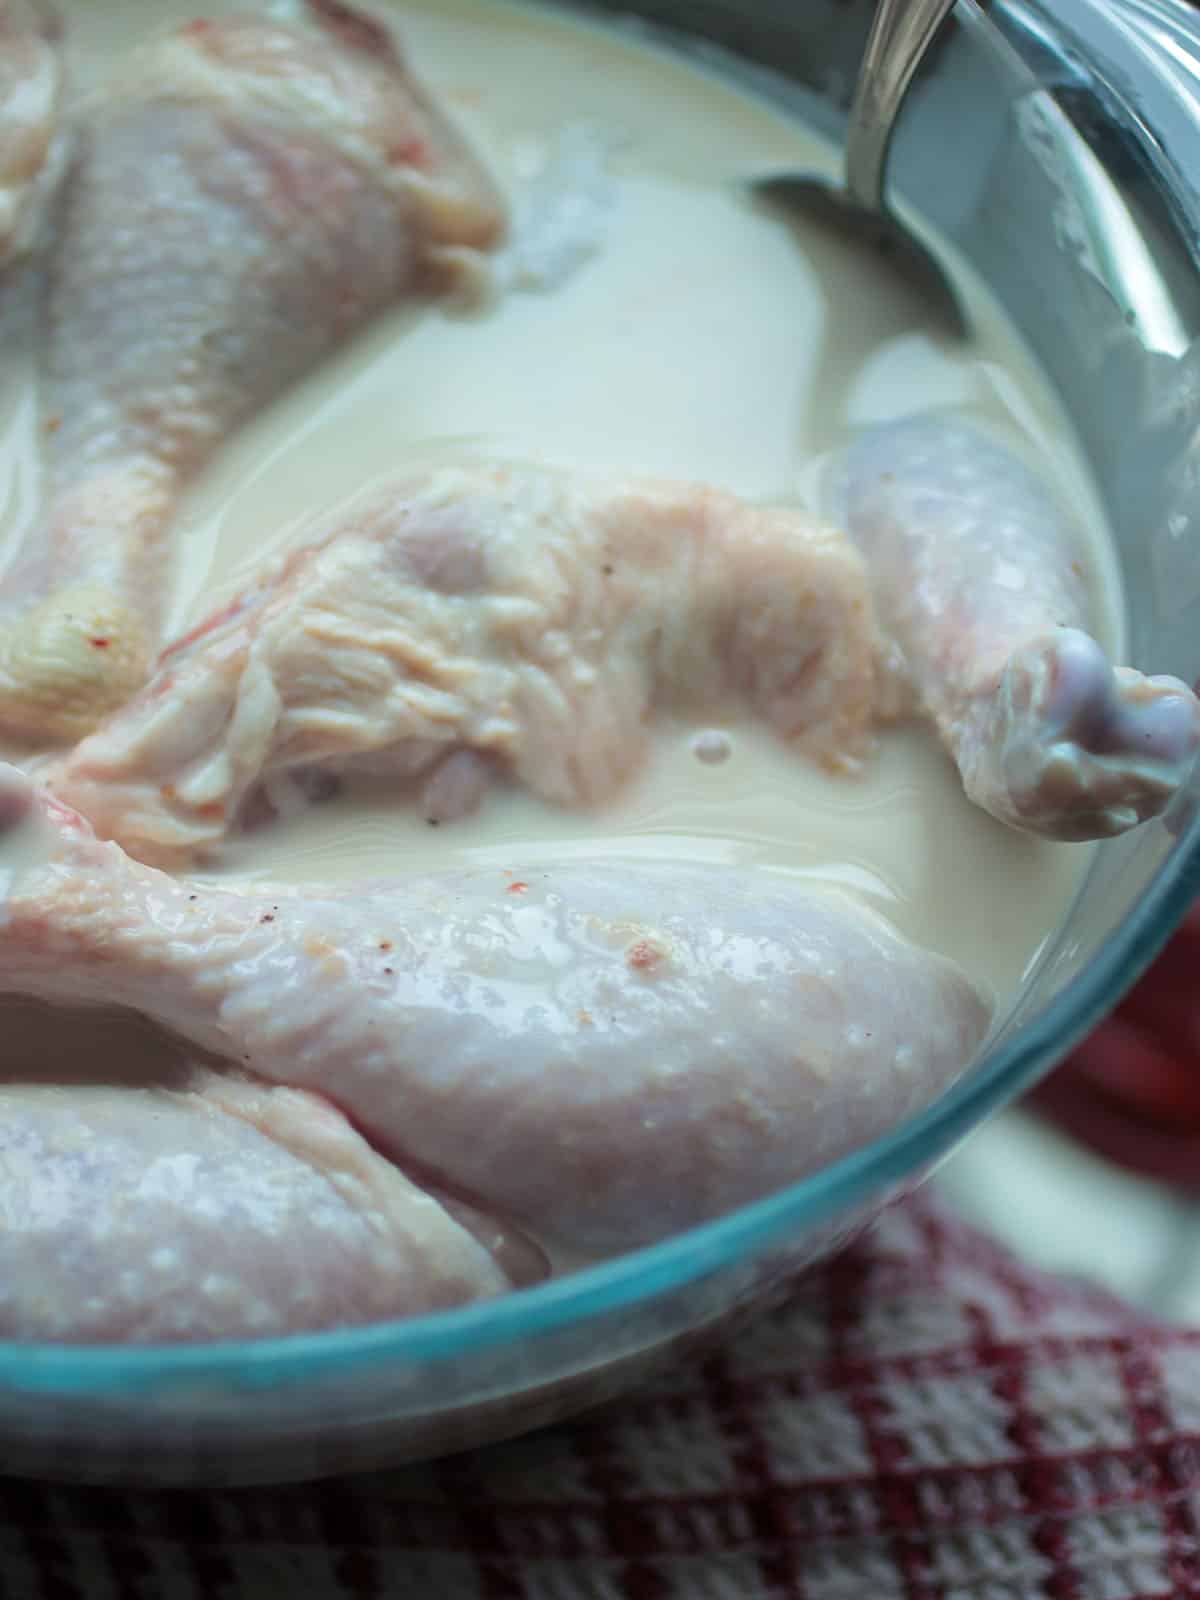 Soaking the chicken in buttermilk mixture.